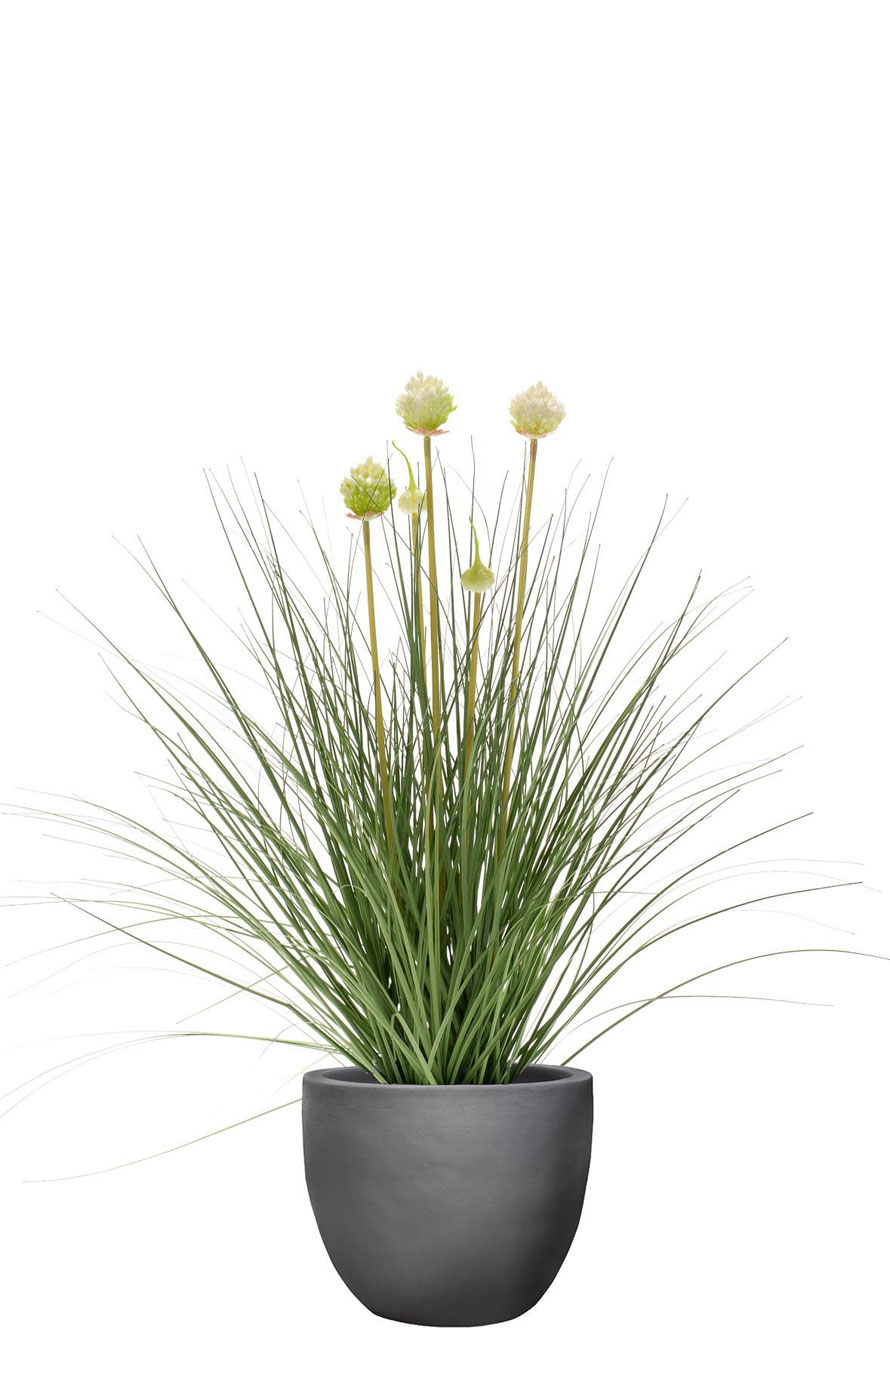 Allium-Kunstgras-mit-Blumen-Stimmungsbild.jpg